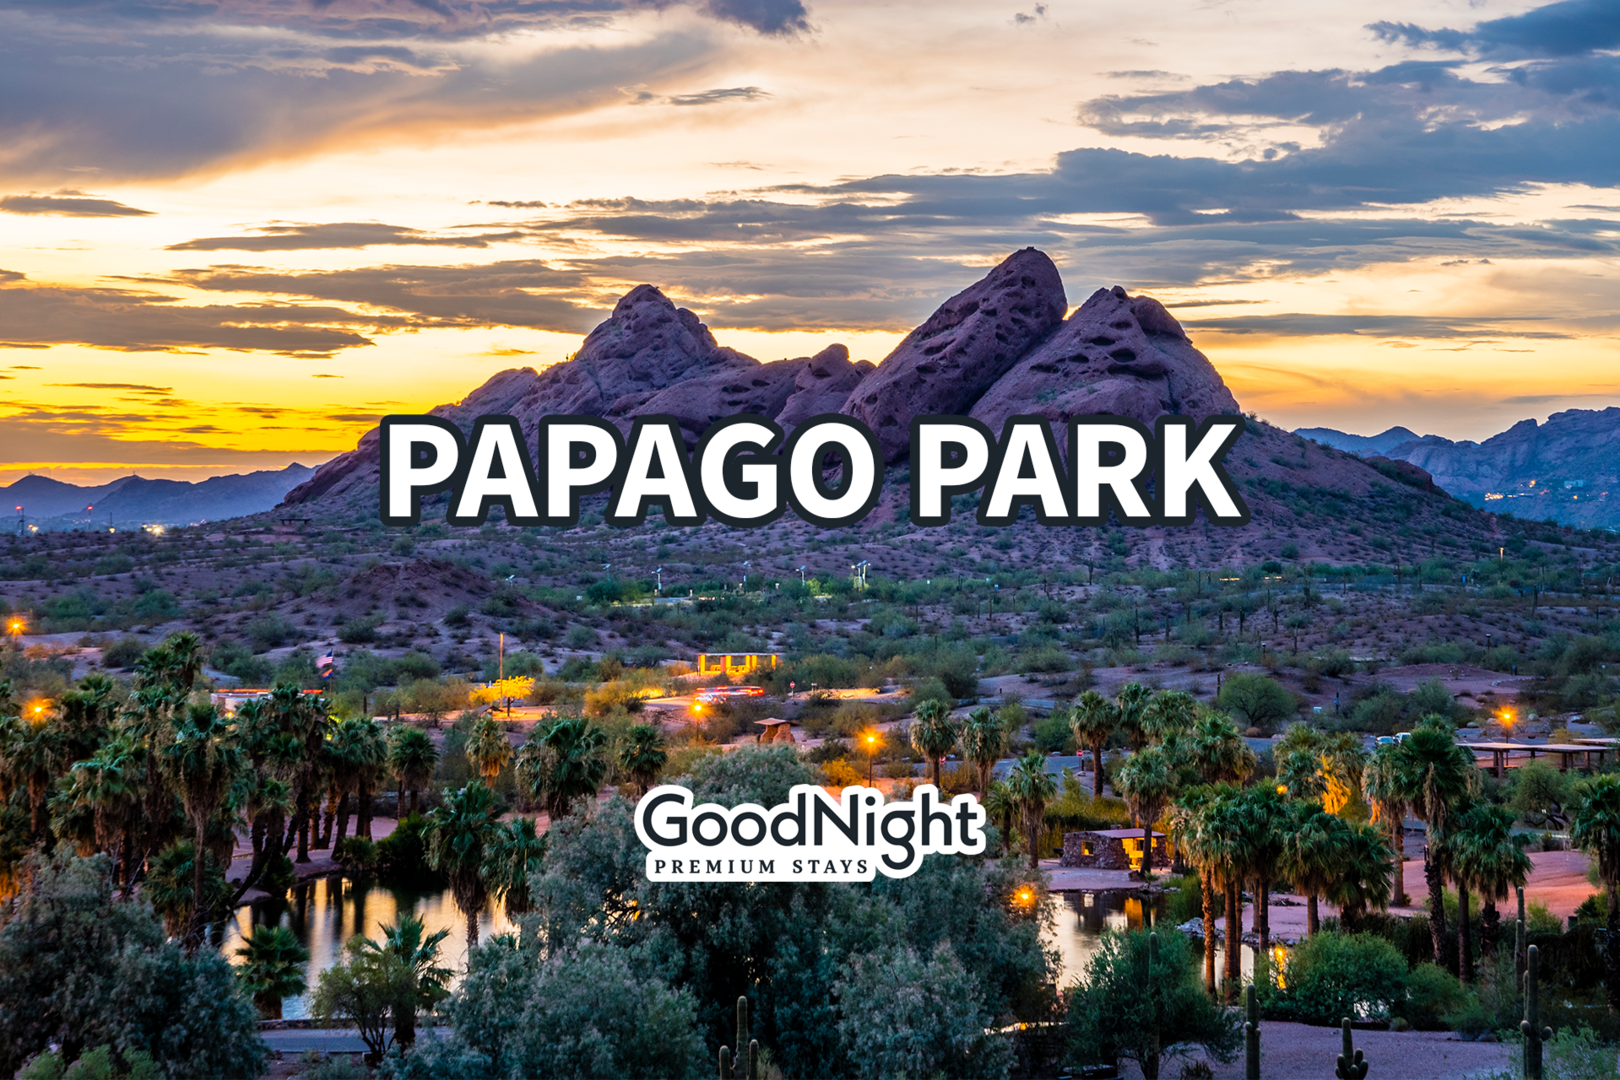 16 mins: Papago Park